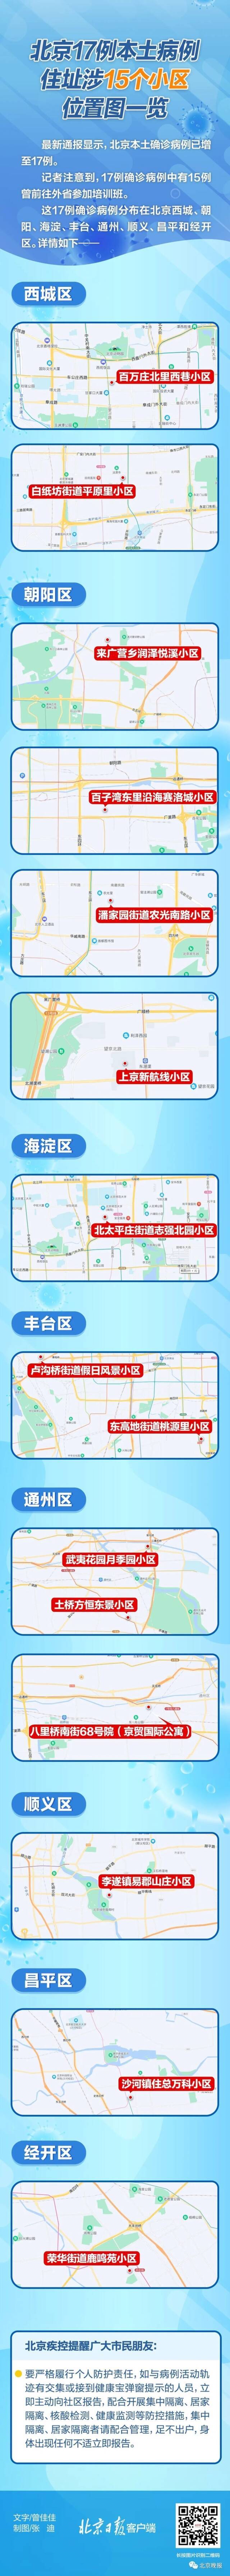 北京17例本土确诊病例所涉小区及关联场所汇总